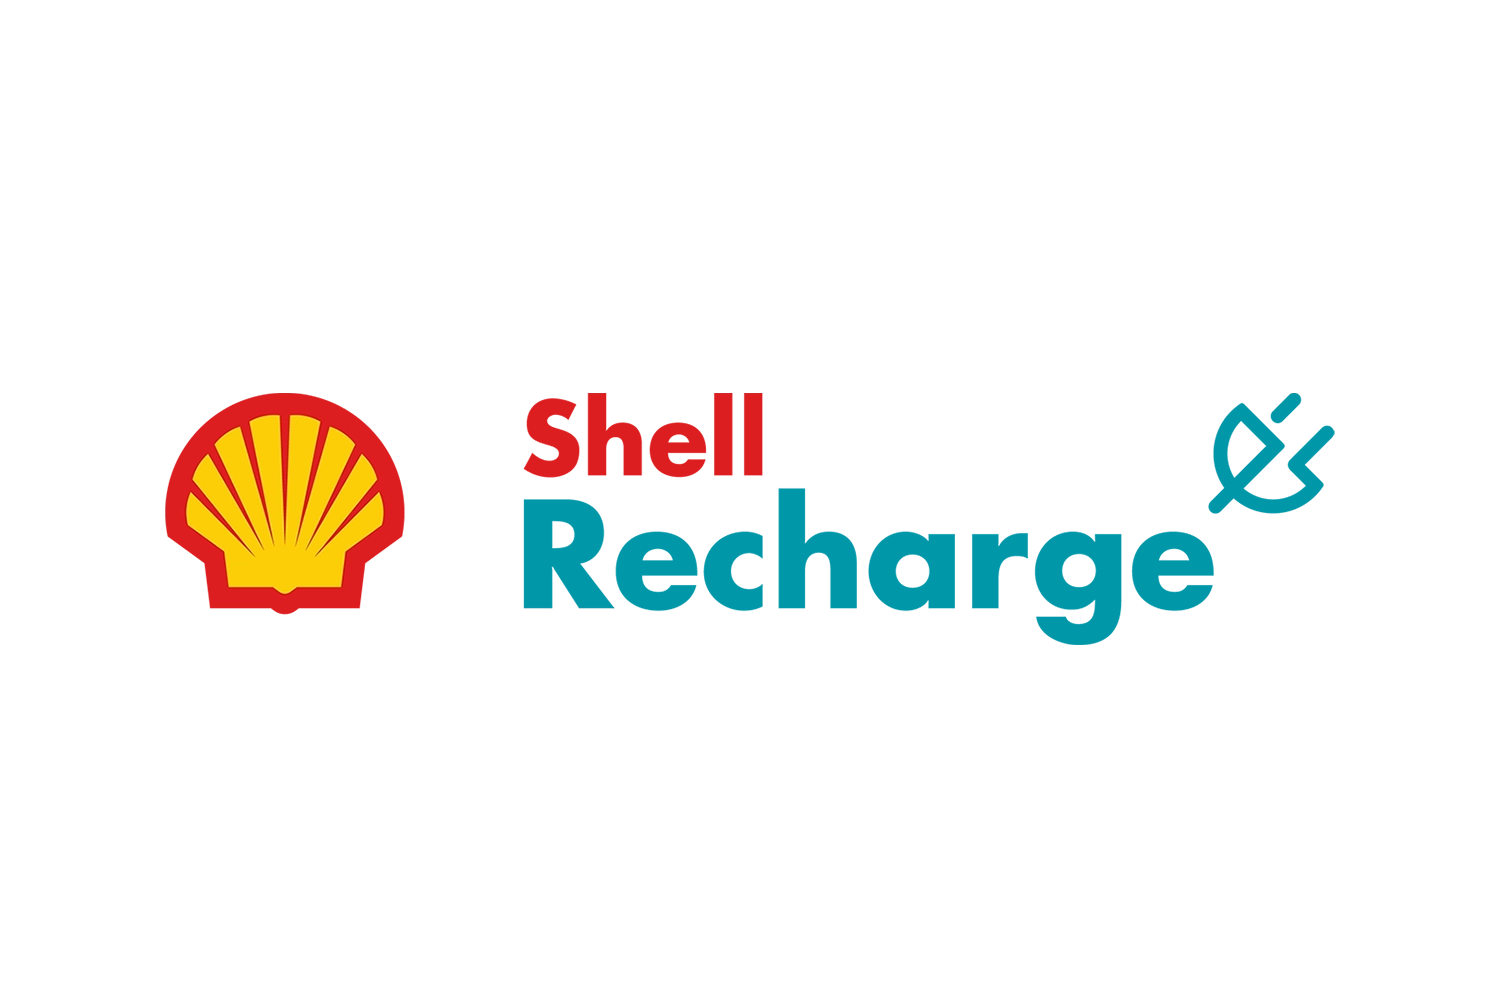 Logo von Shell Recharge, der Marke der Shell Gruppe für das Laden von E-Autos im öffentlichen Raum.